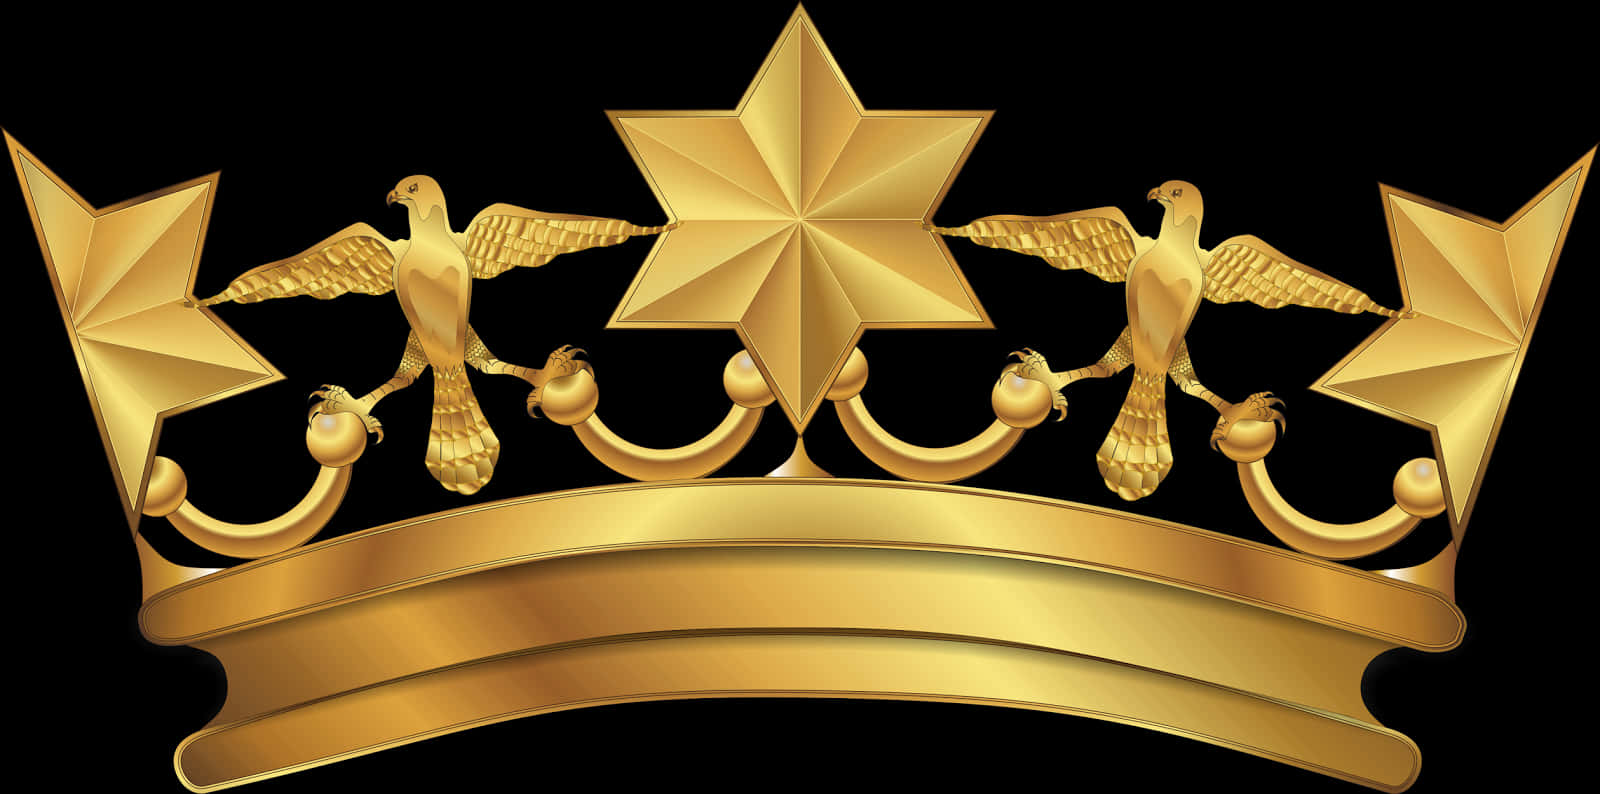 Golden Arabesque Crown Design